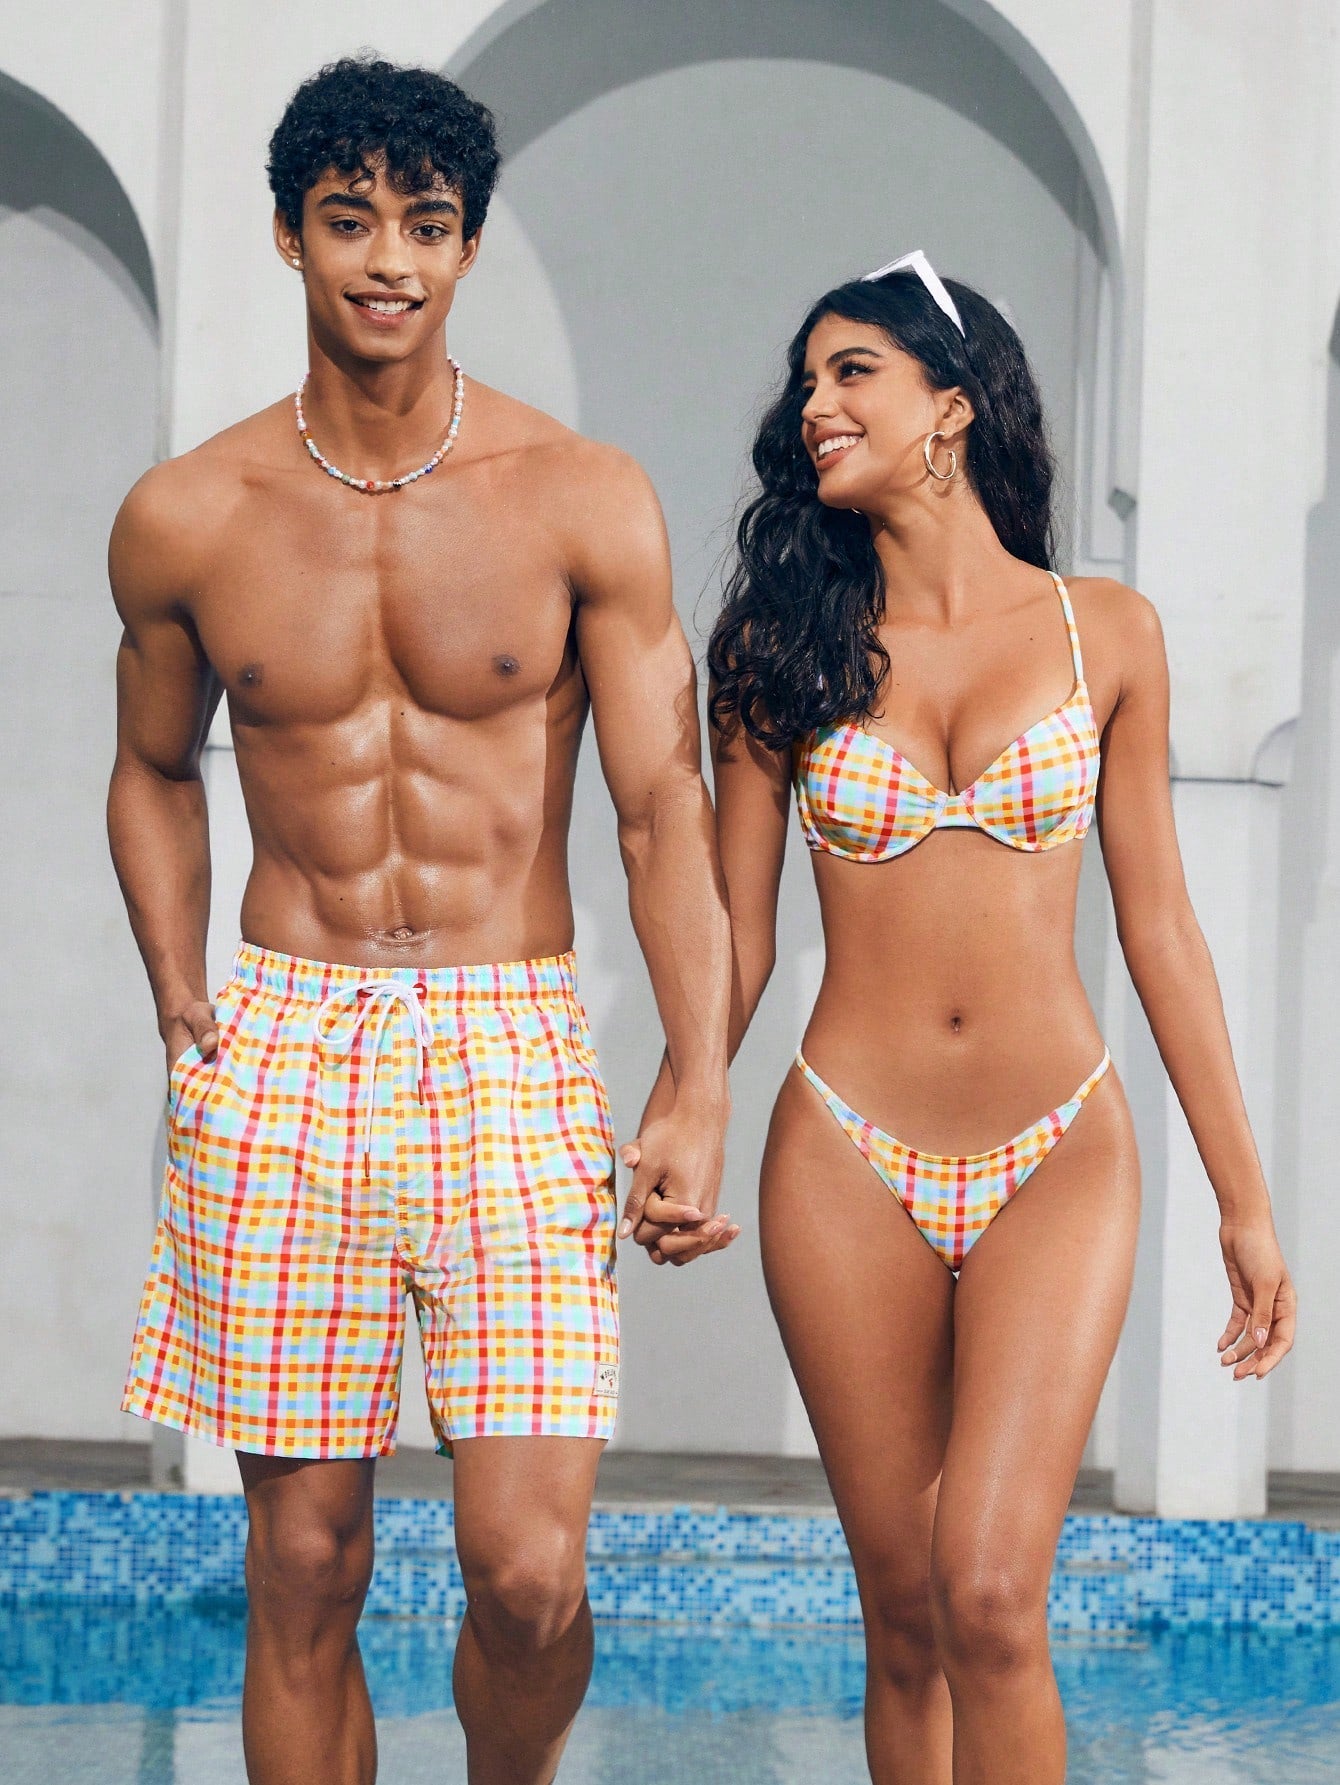 Unisex Plaid Drawstring Beach Shorts - Boho Holiday Style, 100% Polyester, Machine Washable